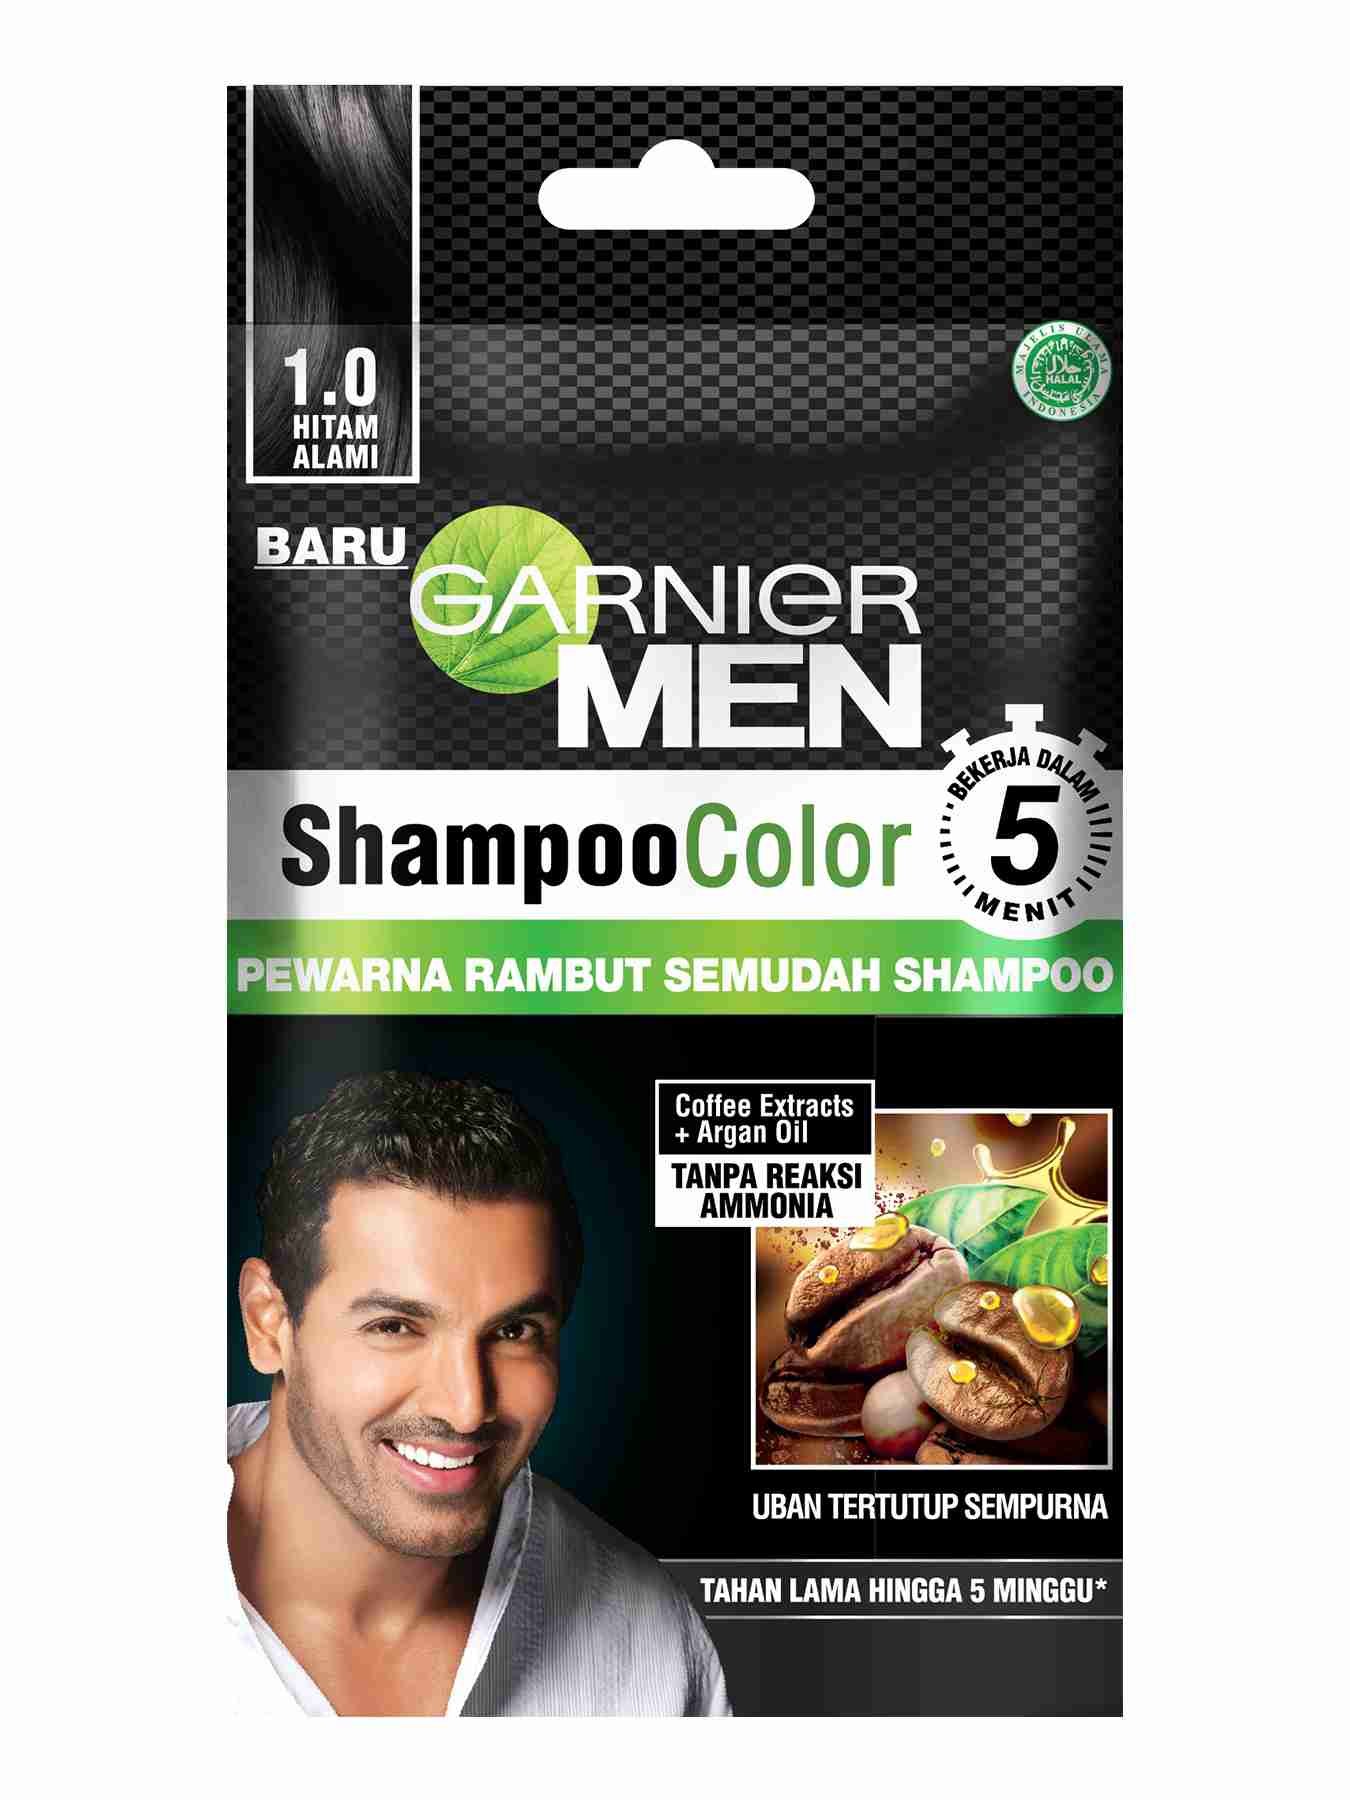 shampoo color shade 1 natural black